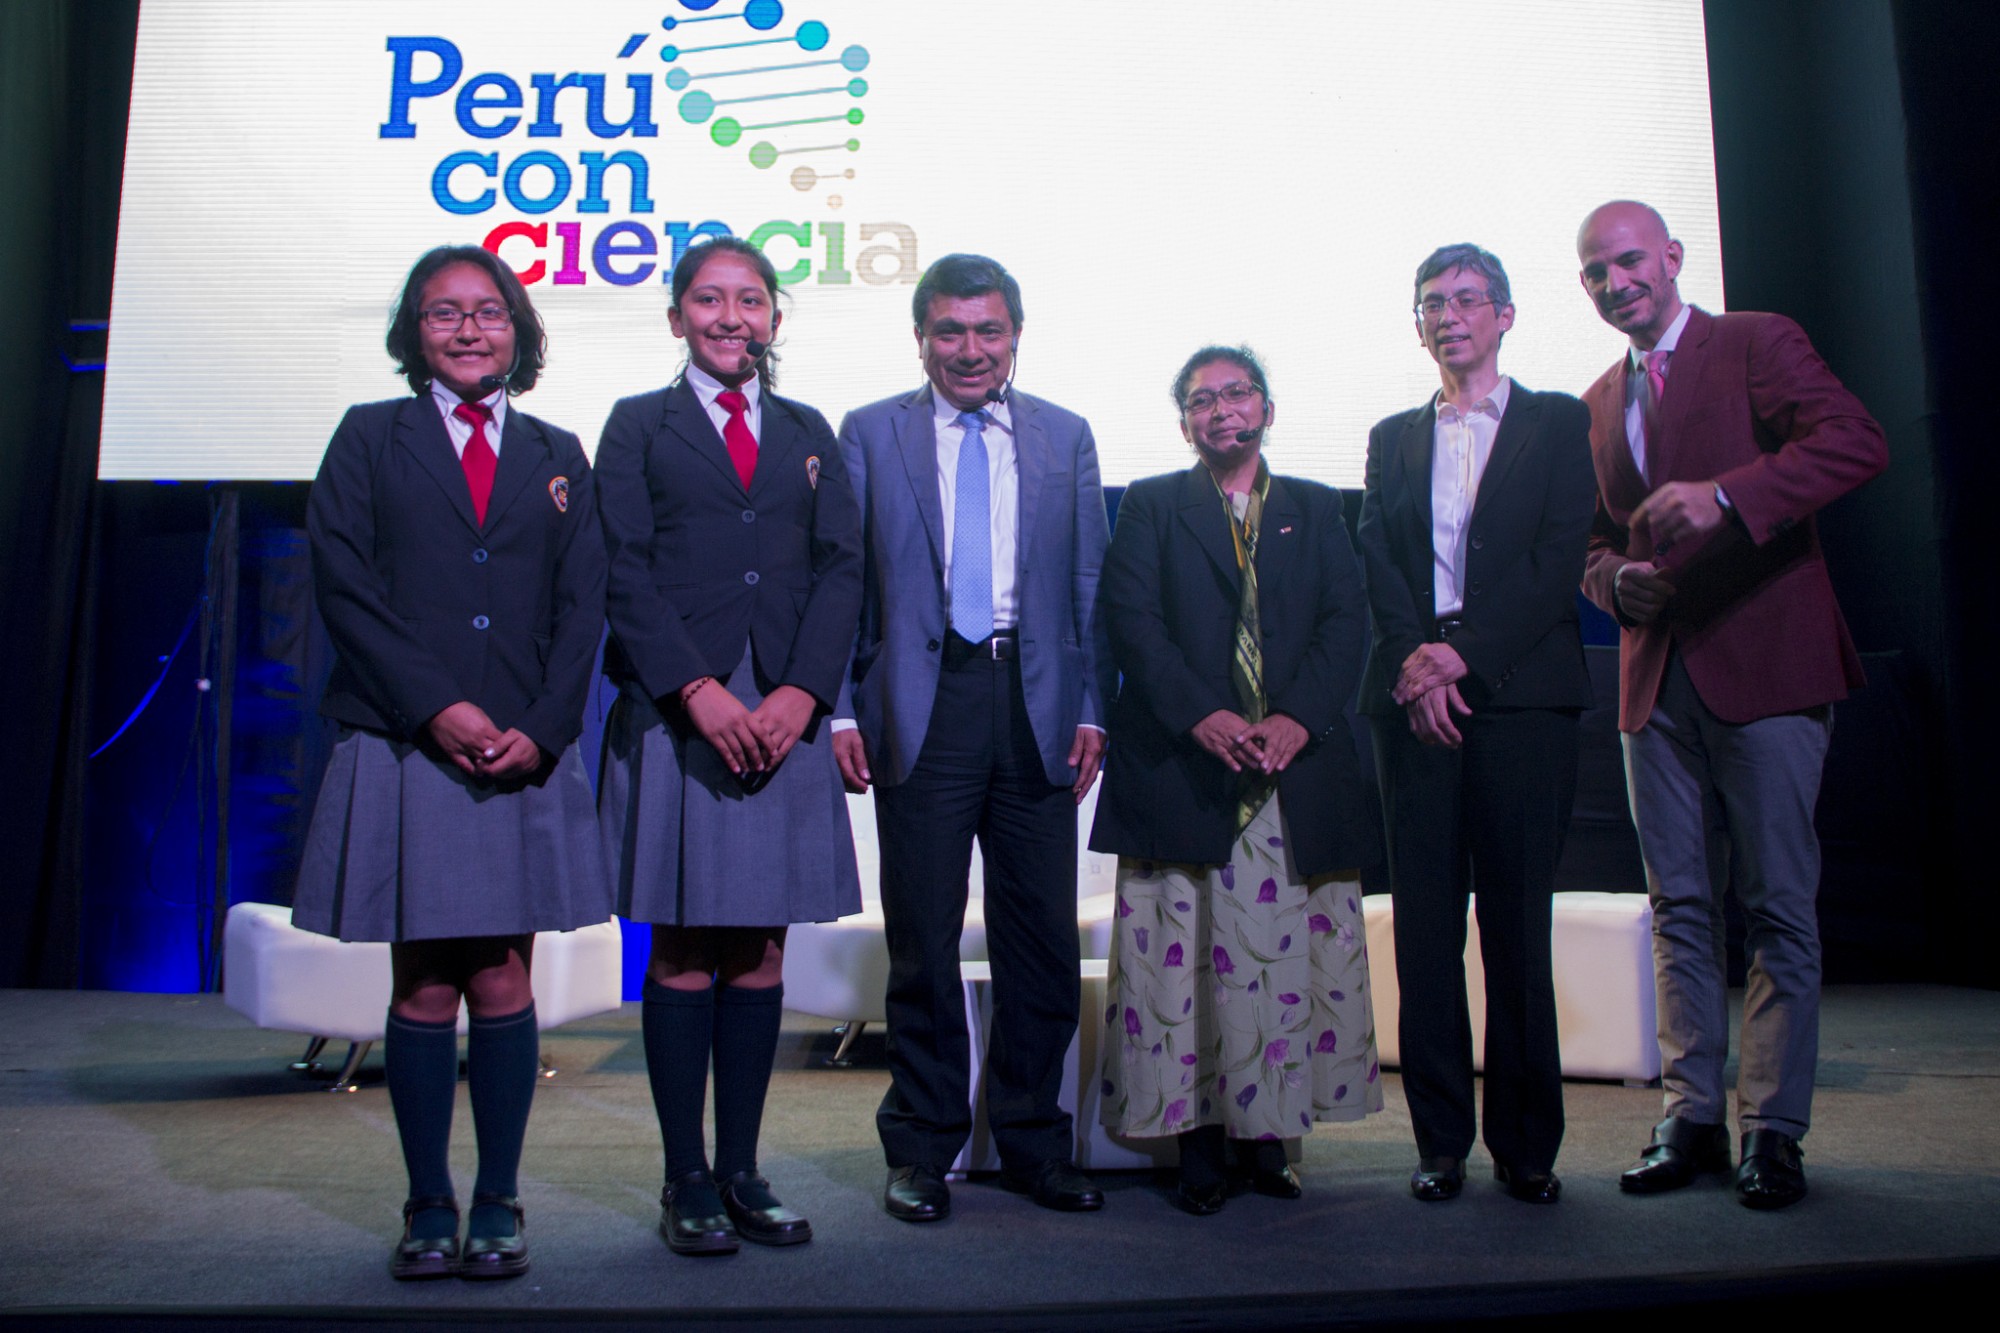 Semana Nacional de la Ciencia, Tecnología e Innovación Tecnológica “Perú con Ciencia” (2)